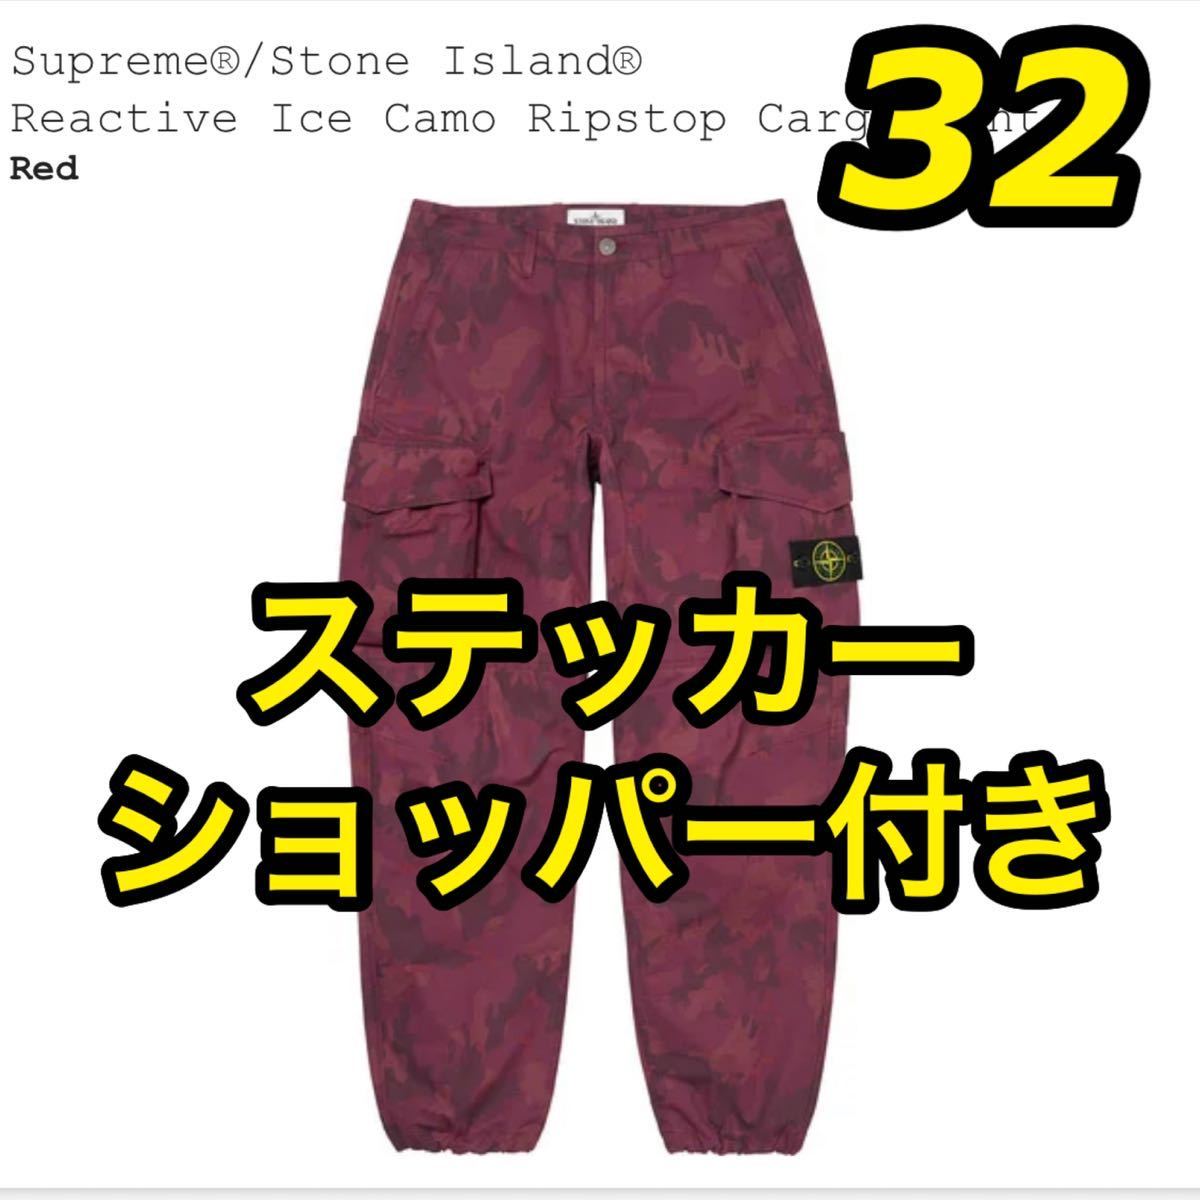 Supreme シュプリーム 2019S/S ×Stone Island ストーンアイランド CAMO 